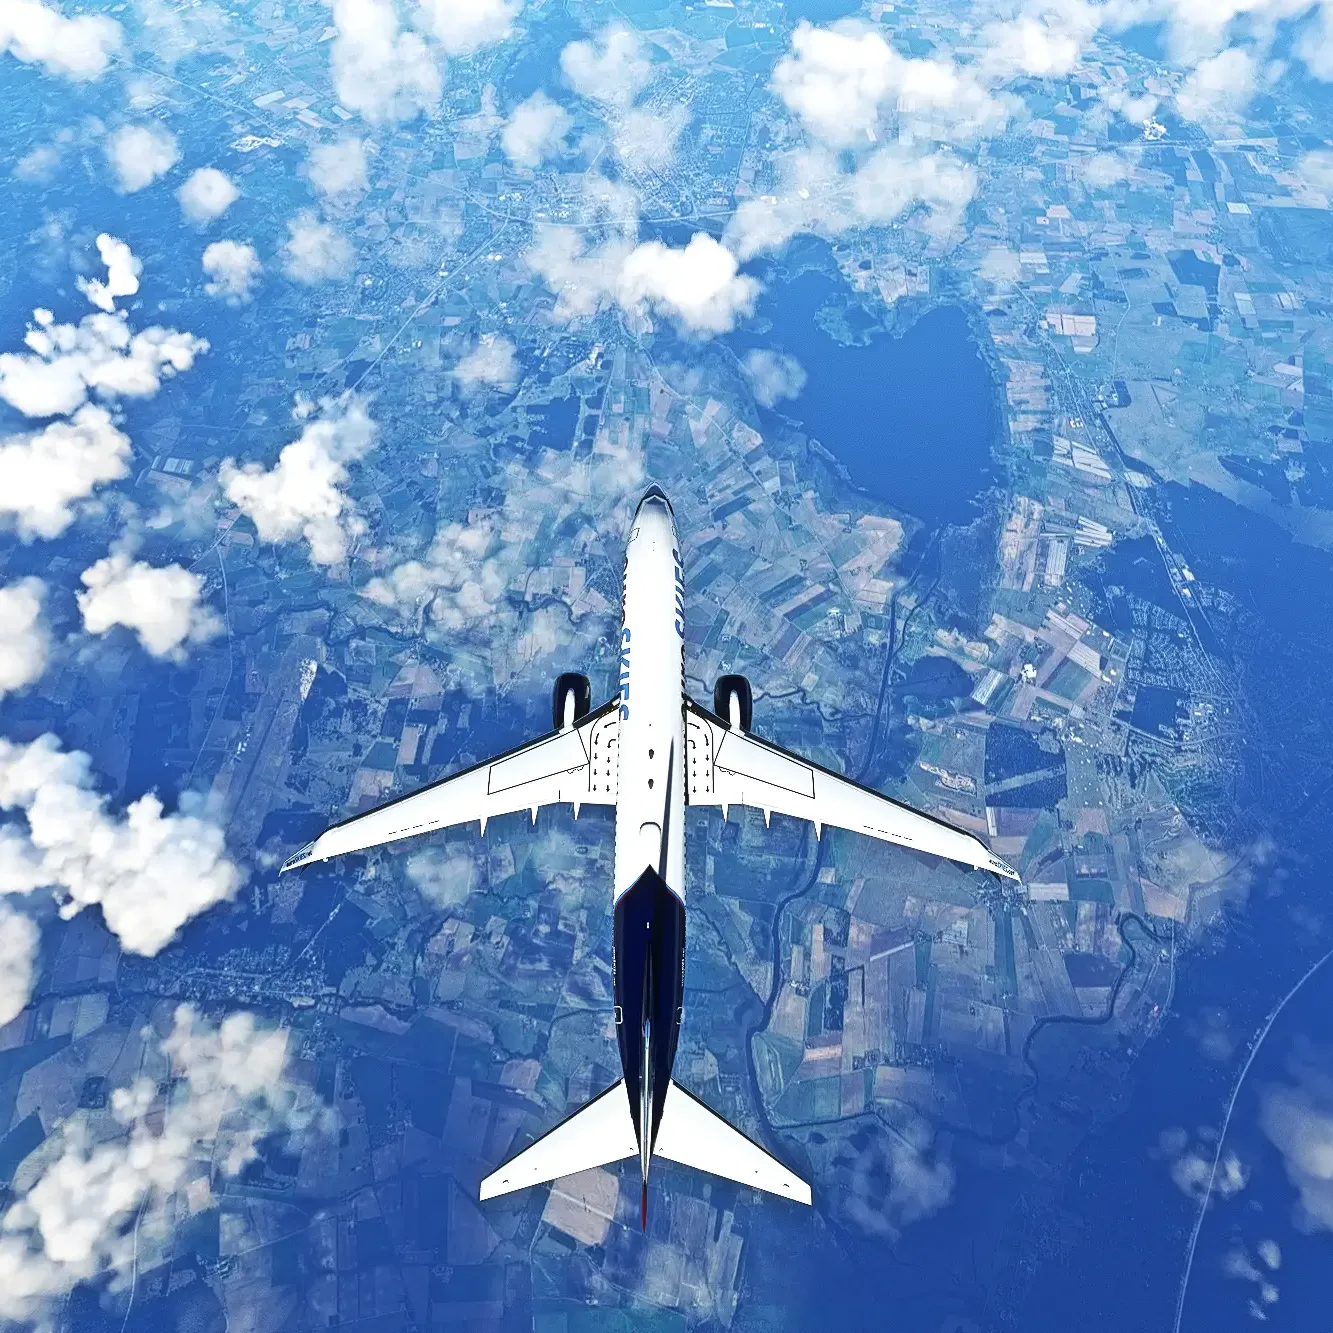 euroSKIES virtuelle Fluggesellschaft PMDG 737-800 MSFS in der Vogelperspektive über einem Gelände mit einem See, Feldern und einer Autobahn.